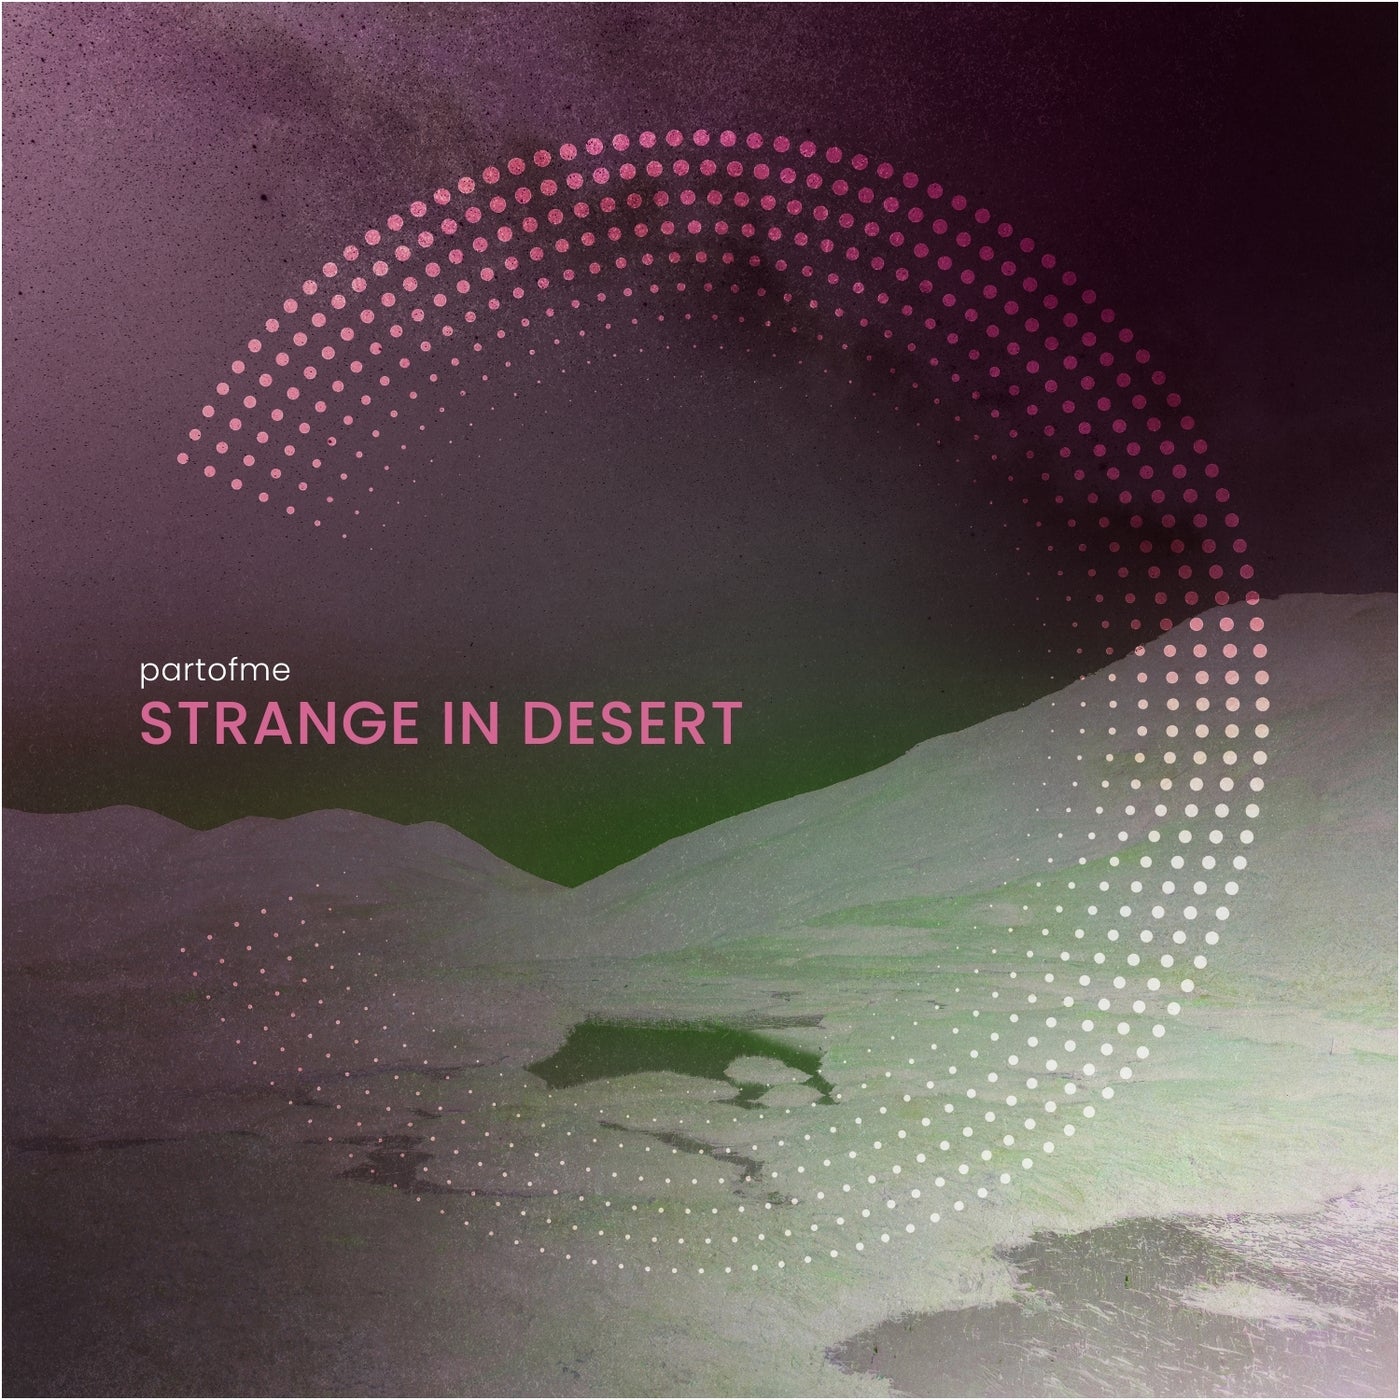 Cover - Partofme - Strange in Desert (Original Mix)